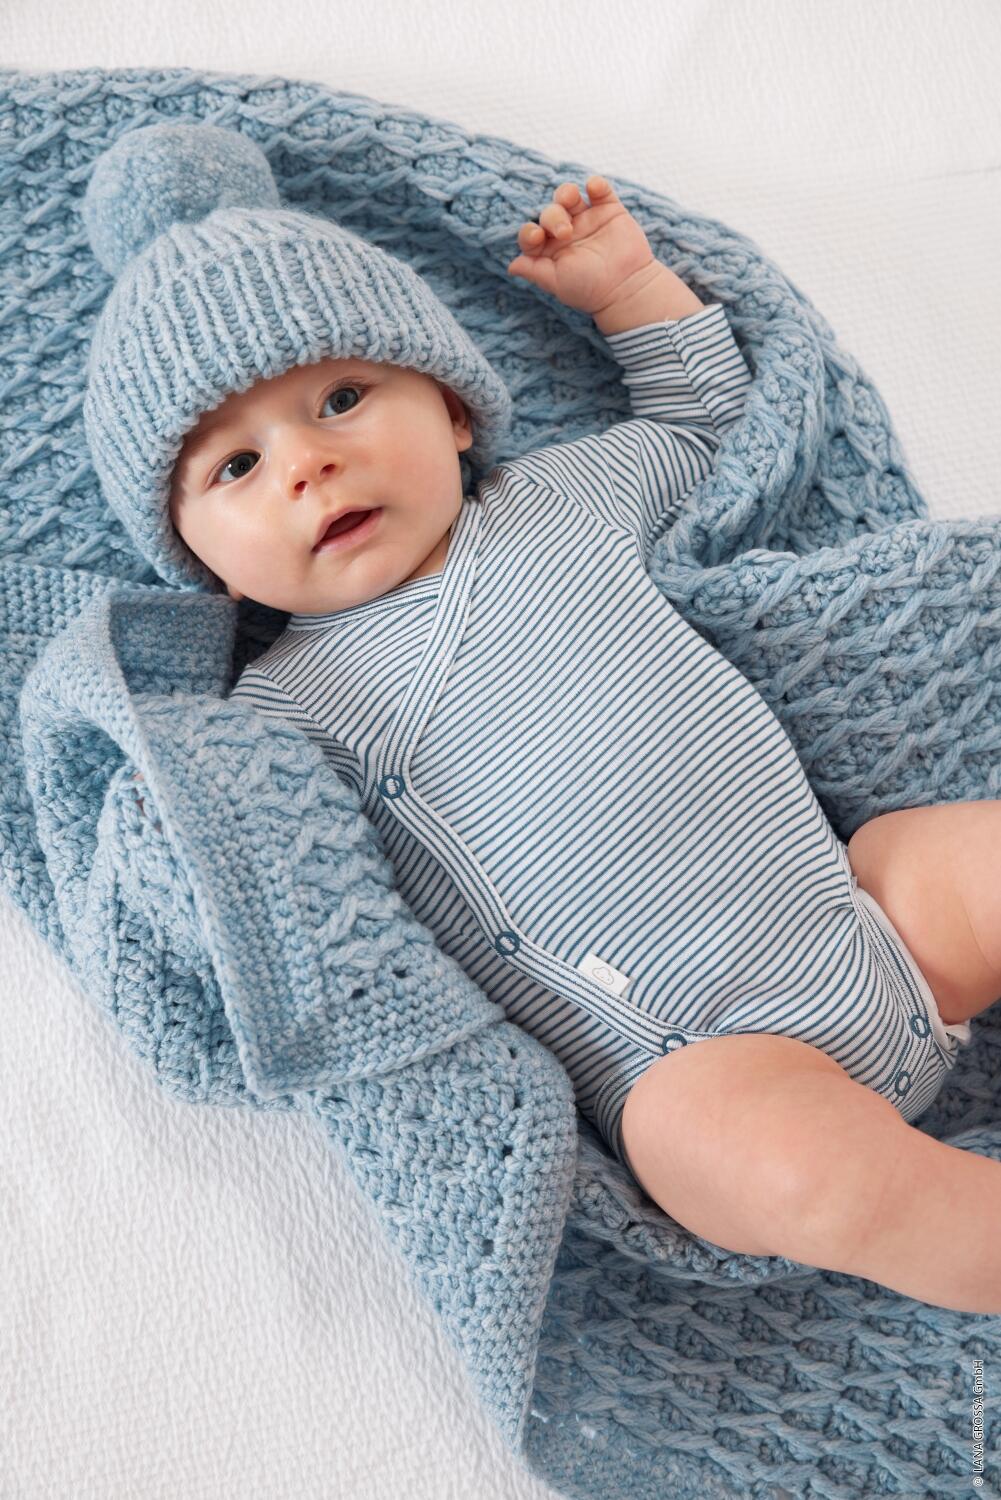 Lana Grossa Infanti 19 - Zauberhafte Babymode Modell 23 und 24 Mütze und Decke aus Cool Wool Big